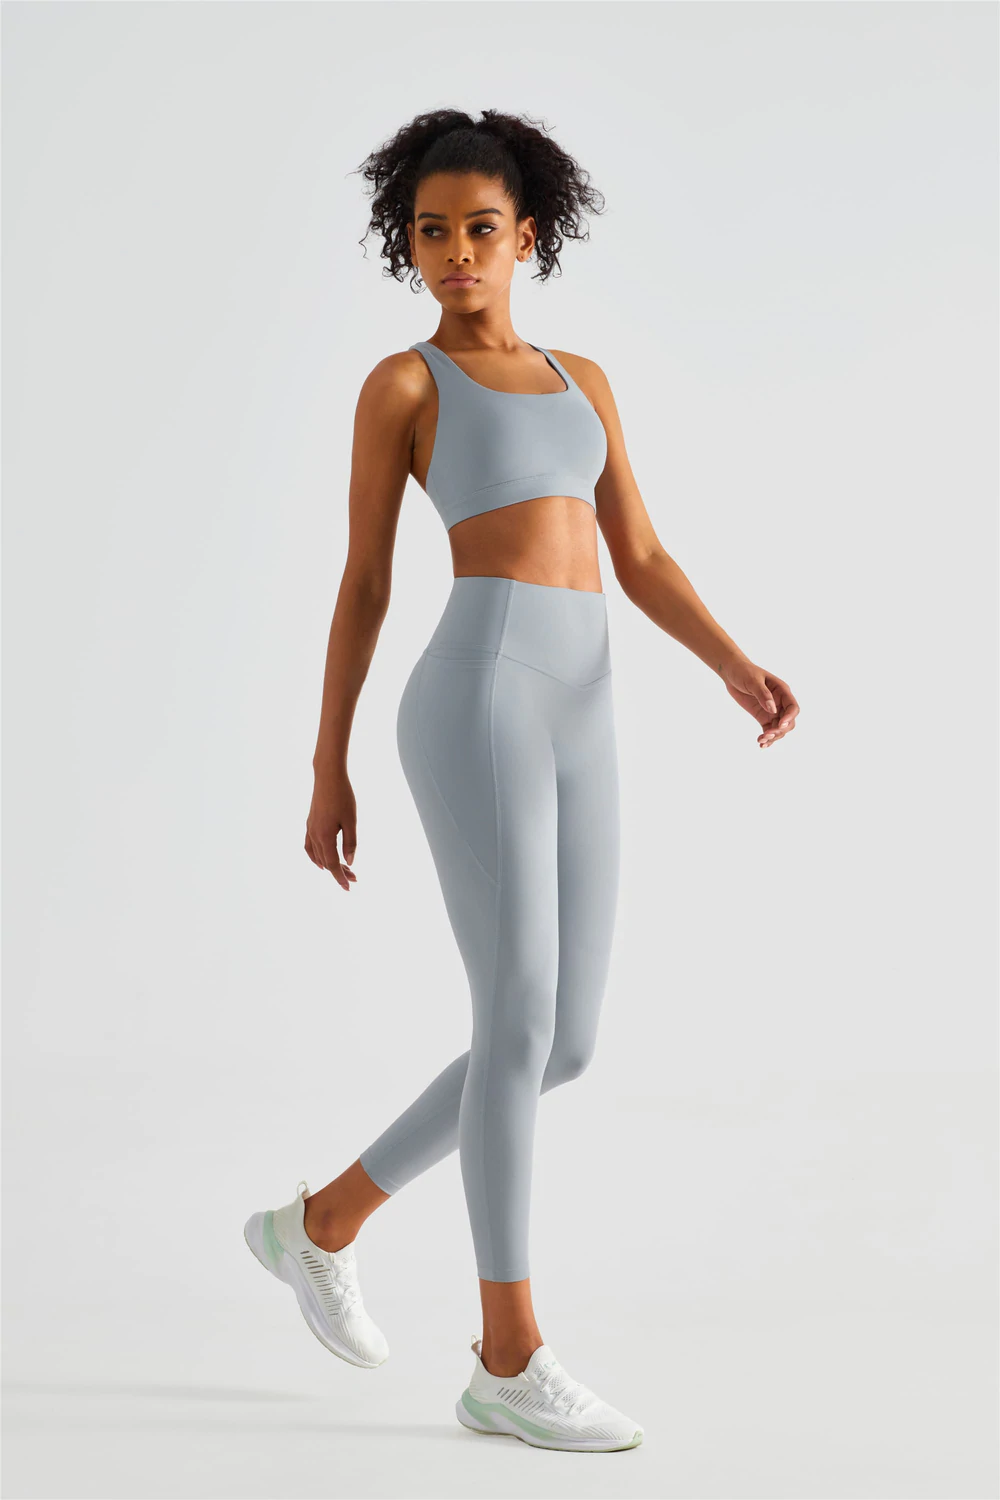 Leggings For Girls, black leggings designed for running – Gymwearmovement